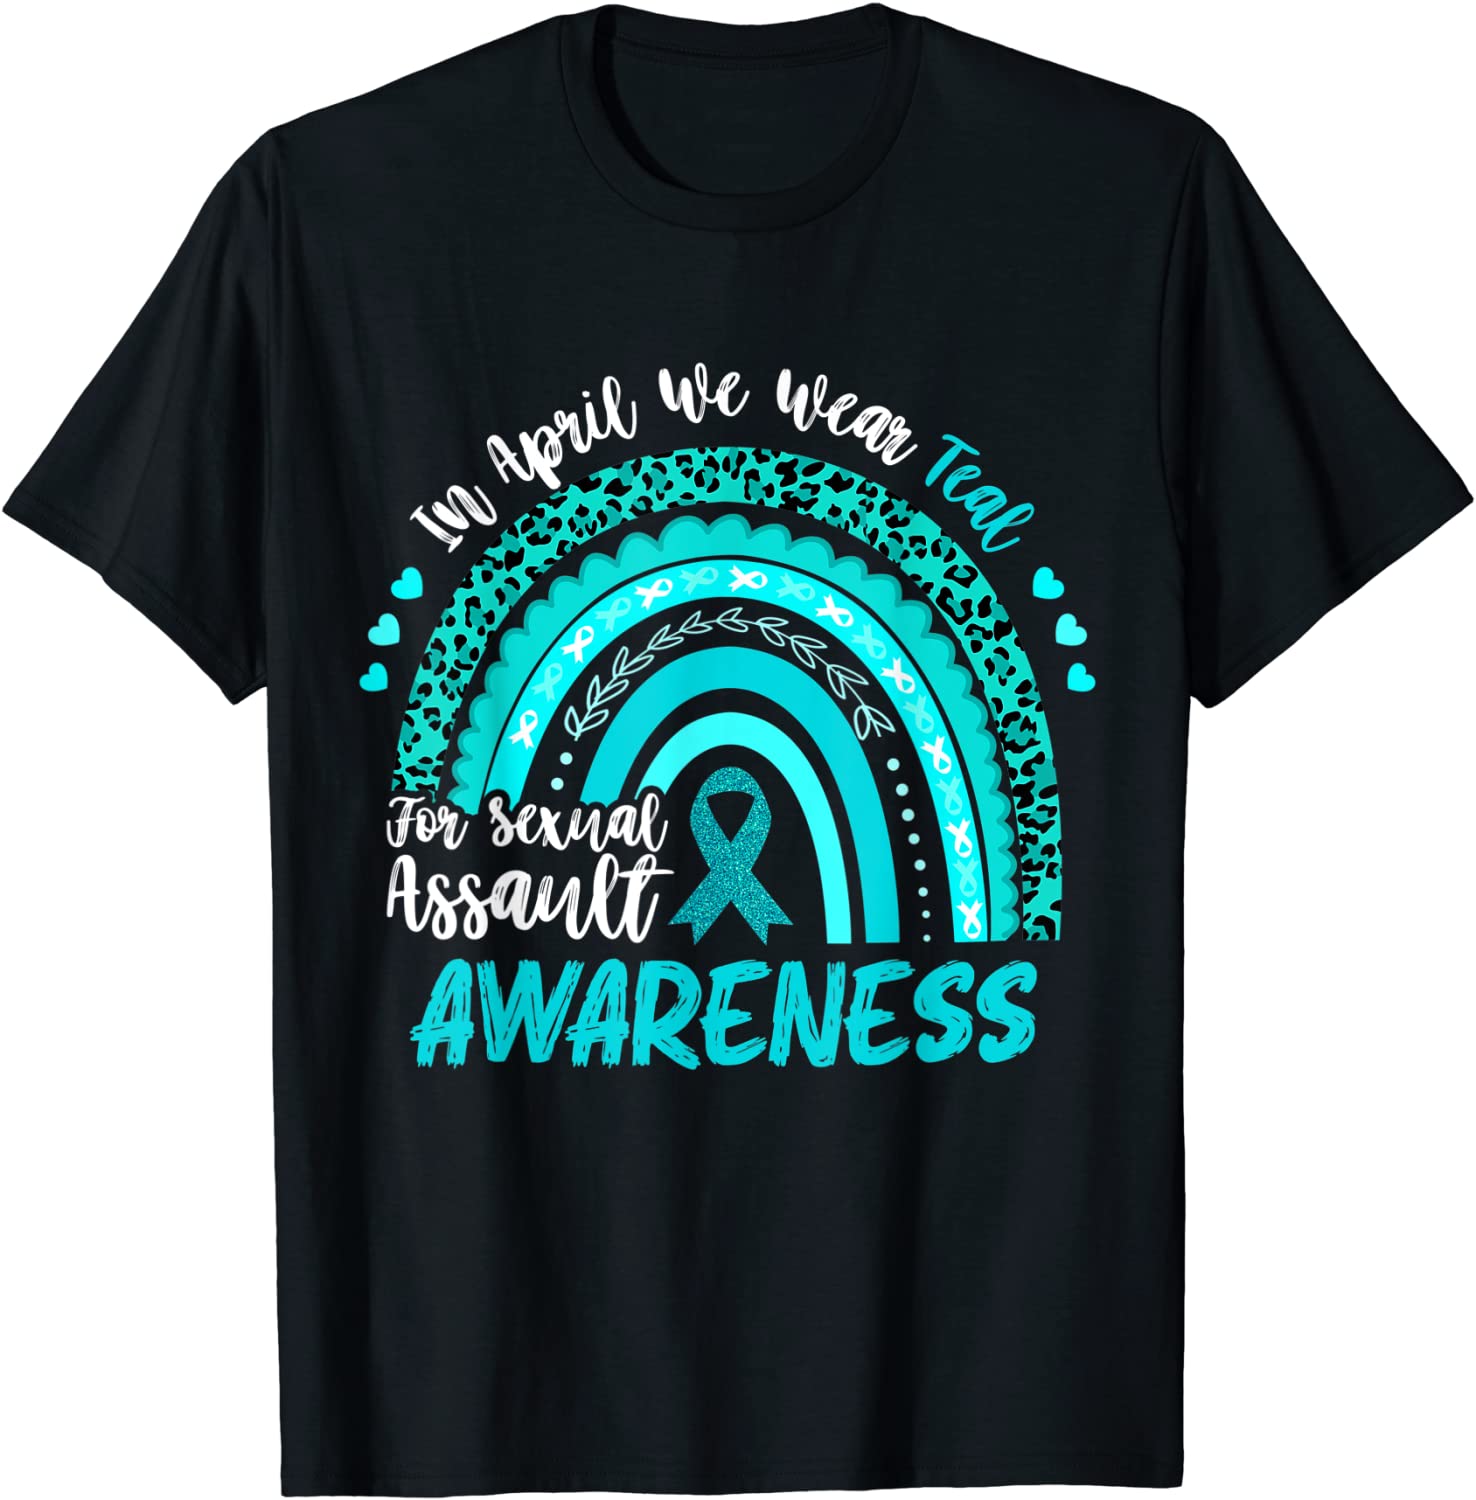 In April We Wear Teal Sexual Assault Awareness Boho Rainbow 2022 Shirt 9955